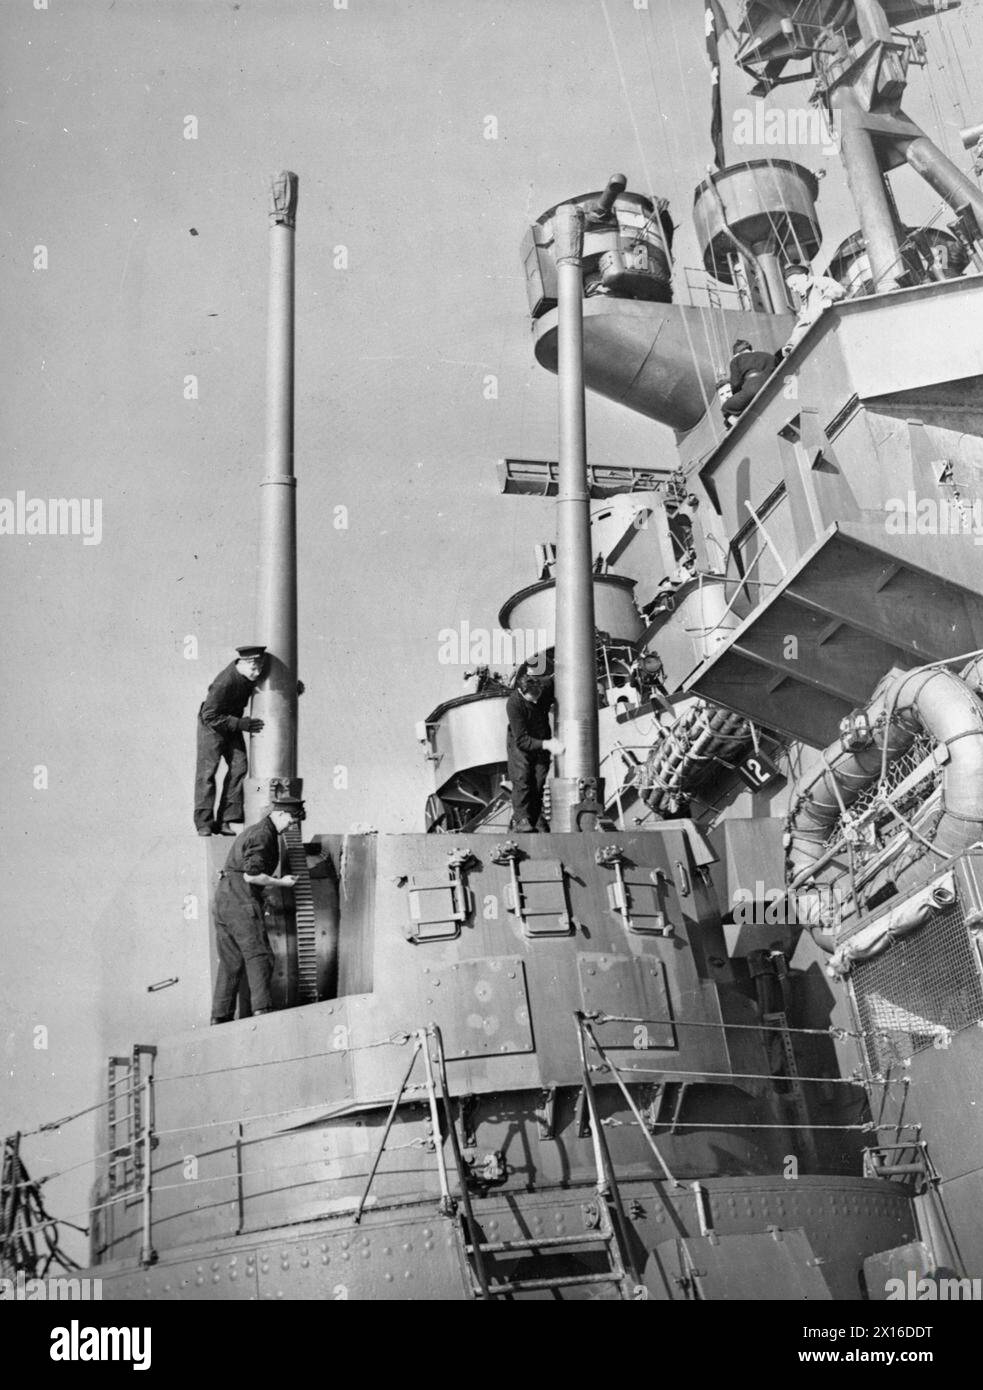 LA ROYAL NAVY DURANTE LA SECONDA GUERRA MONDIALE - uno degli otto attacchi gemelli Mark i per cannoni Mark i da 5,25 pollici Quick Fire (QF) Mark i viene pulito e oliato a bordo della HMS KING GEORGE V. la nave si trova in un porto britannico dopo il suo ritorno dagli Stati Uniti Royal Navy, RE GIORGIO V (HMS) Foto Stock